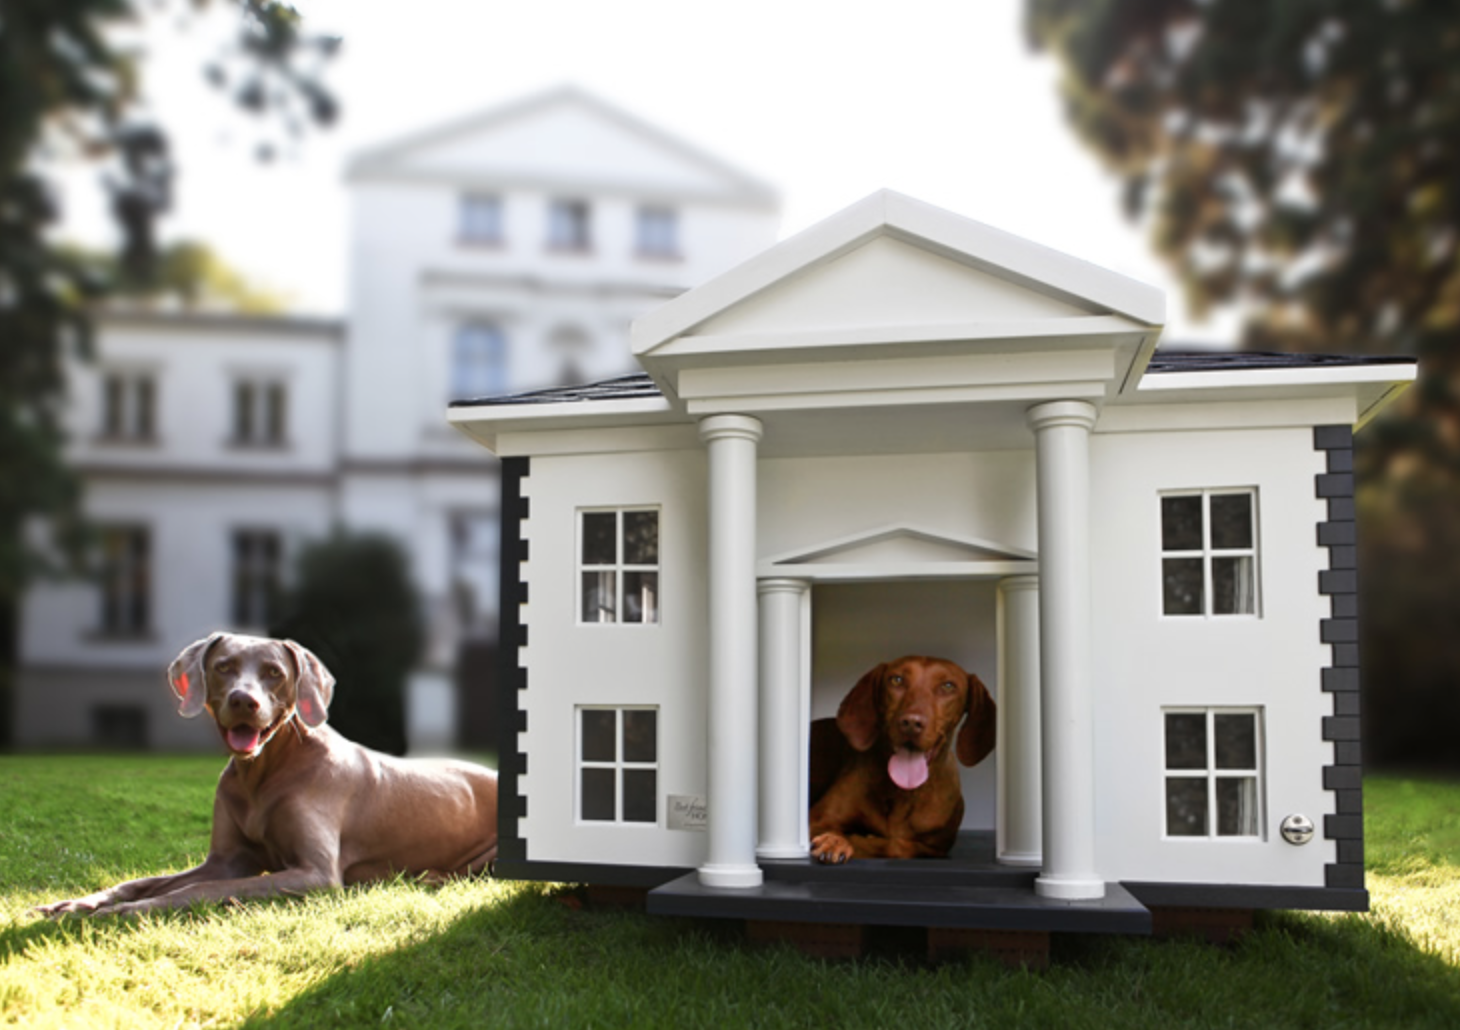 Dog house casino dog houses info. Домик для собаки. Собака с конурой. Красивые будки для собак. Уютный домик для собаки.